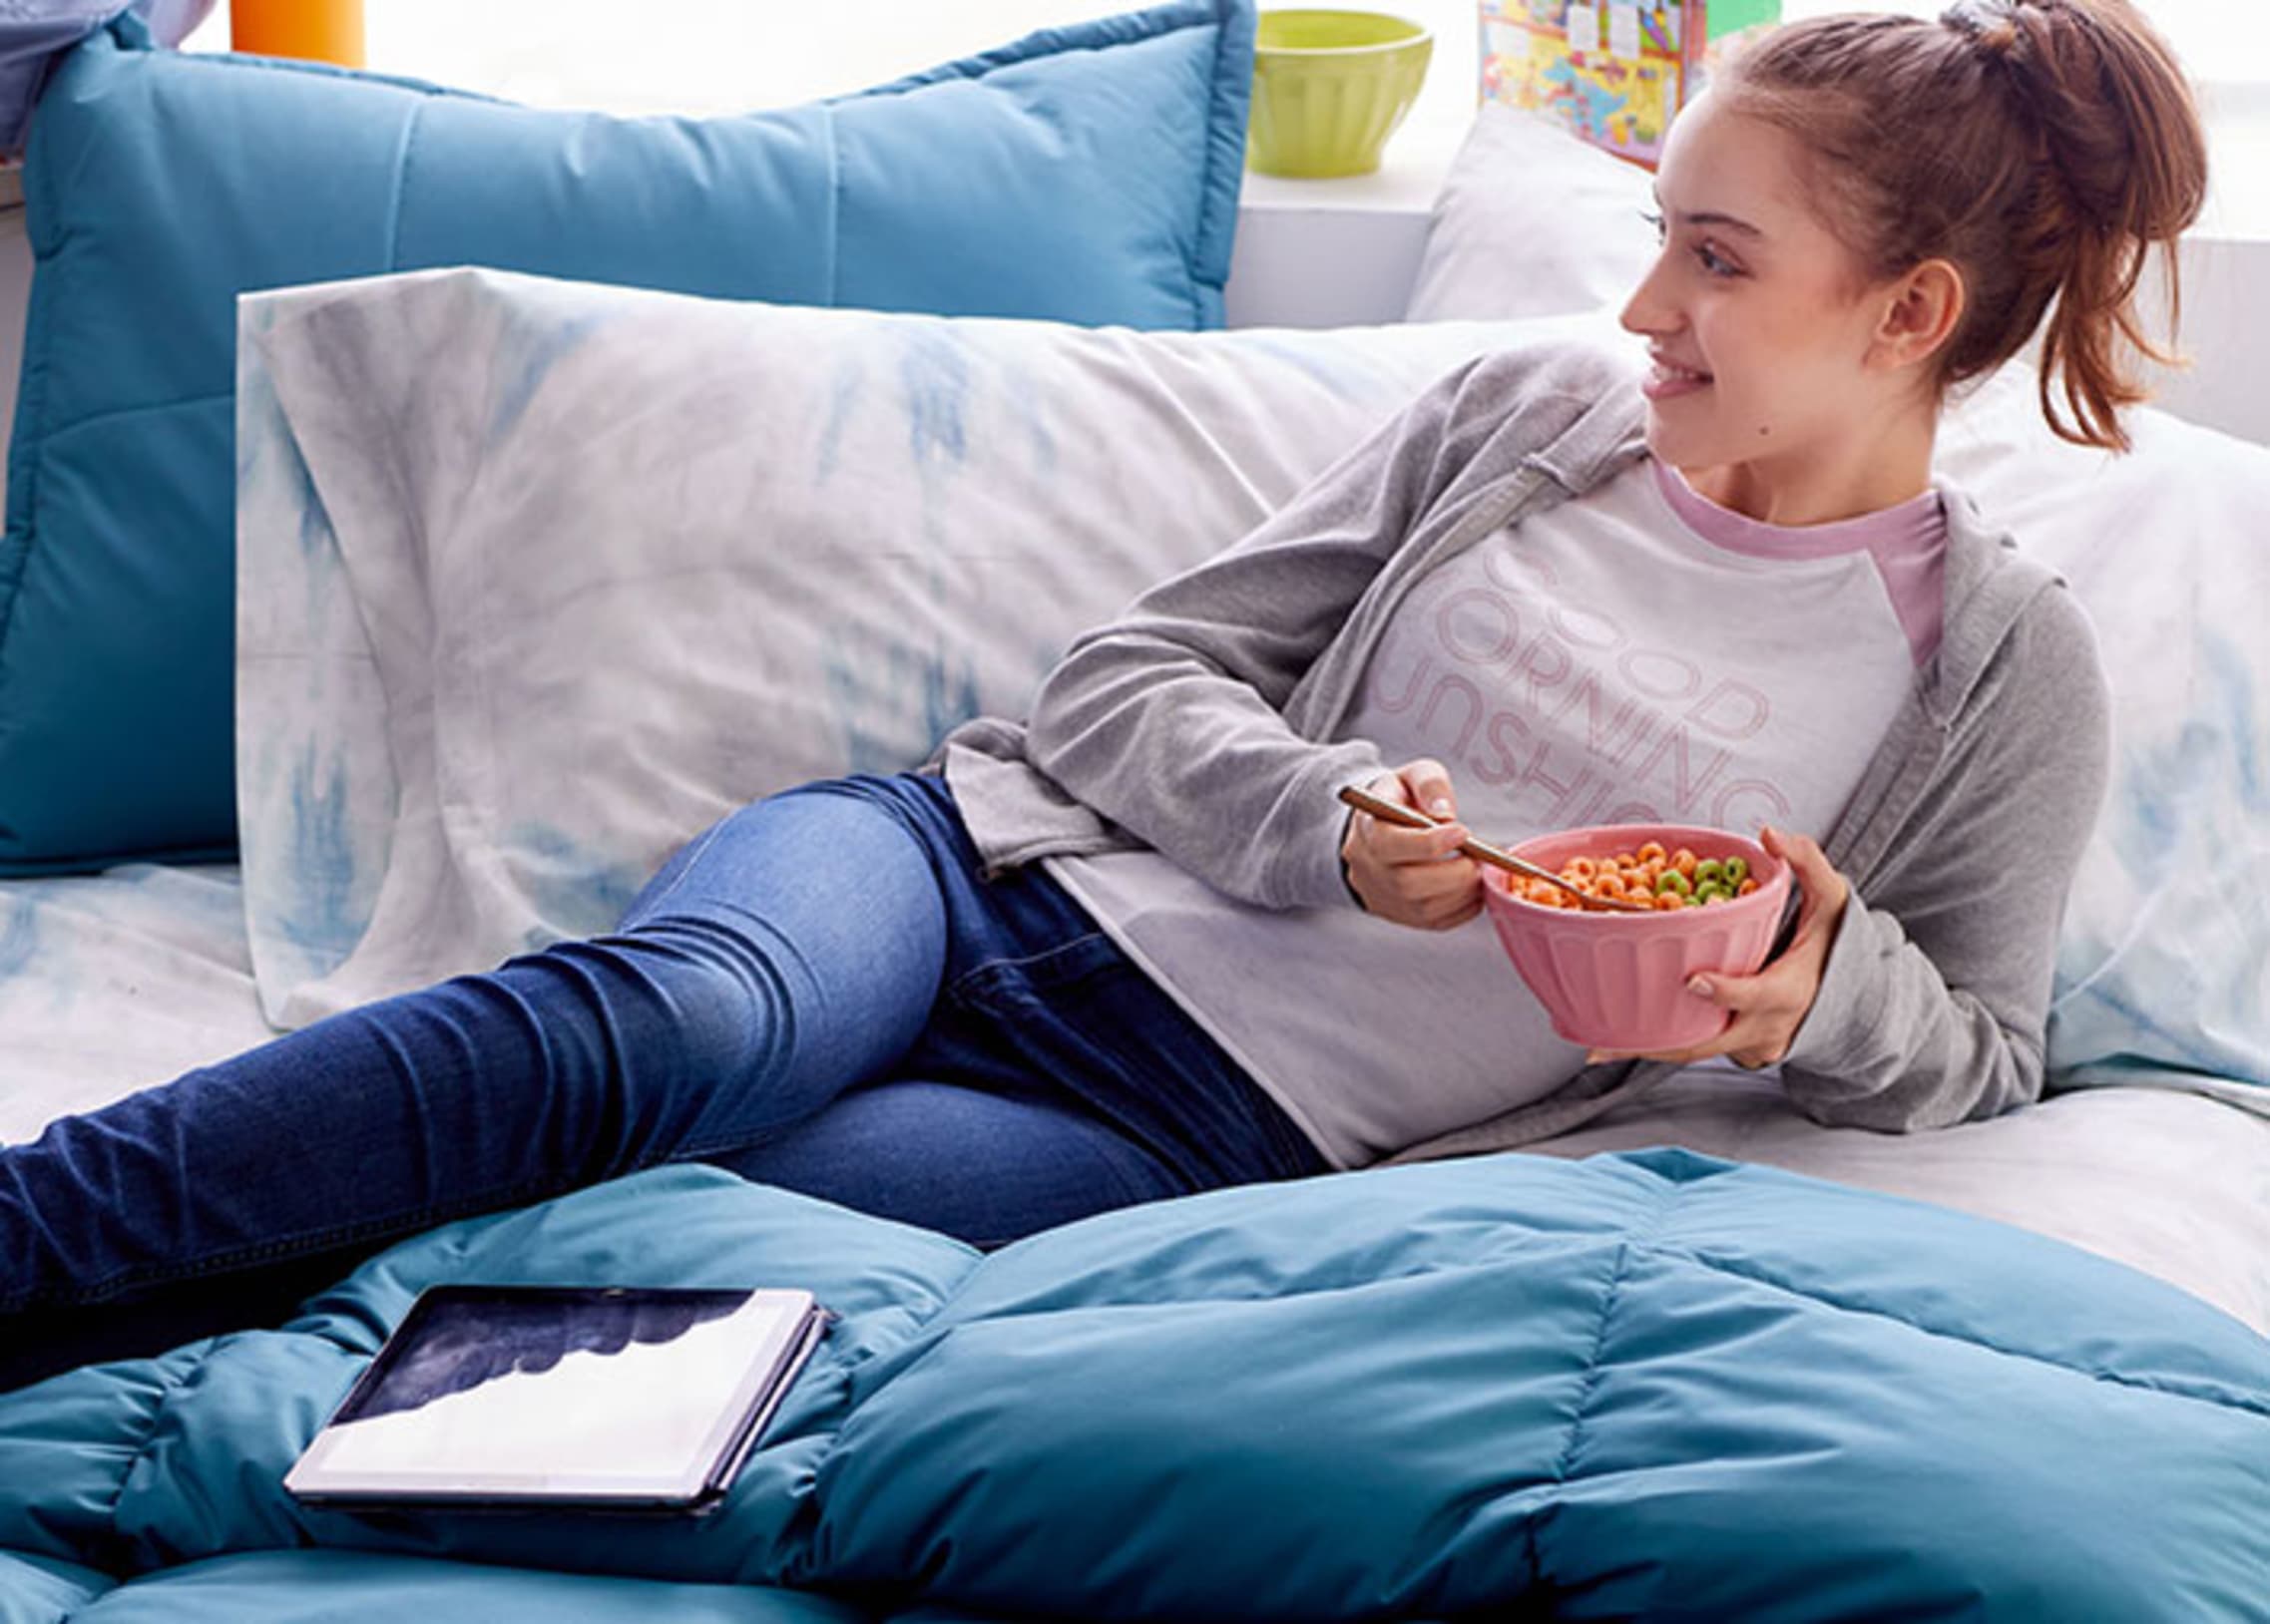 girl eating breakfast on comforter